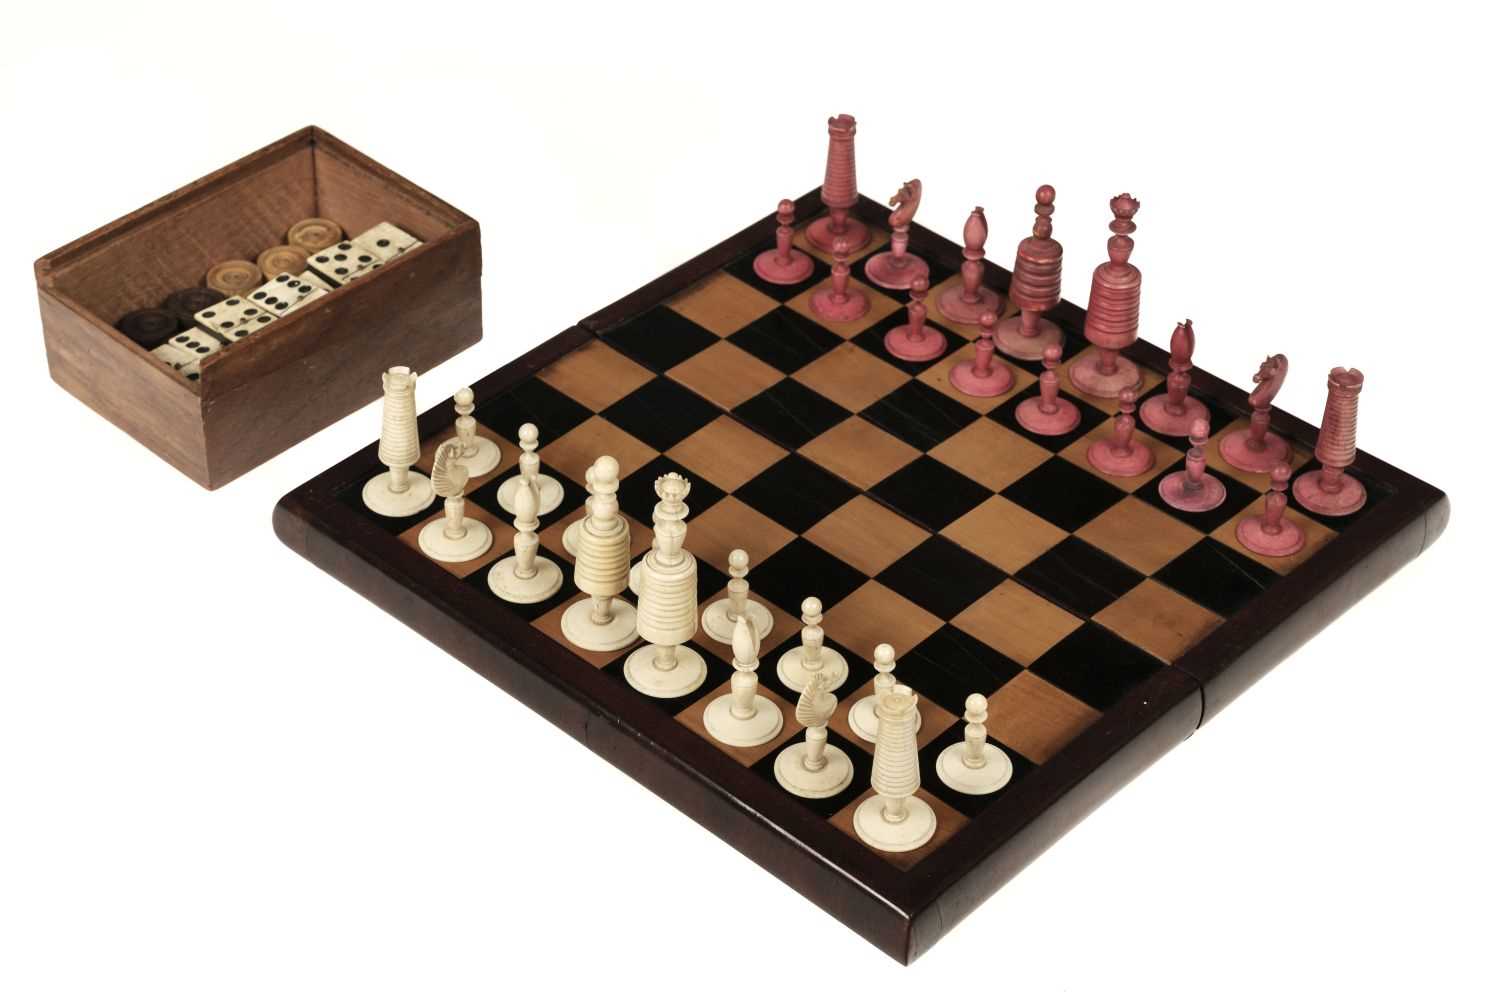 Lot 244 - Chess. A 19th-century bone "Selenus" pattern chess set